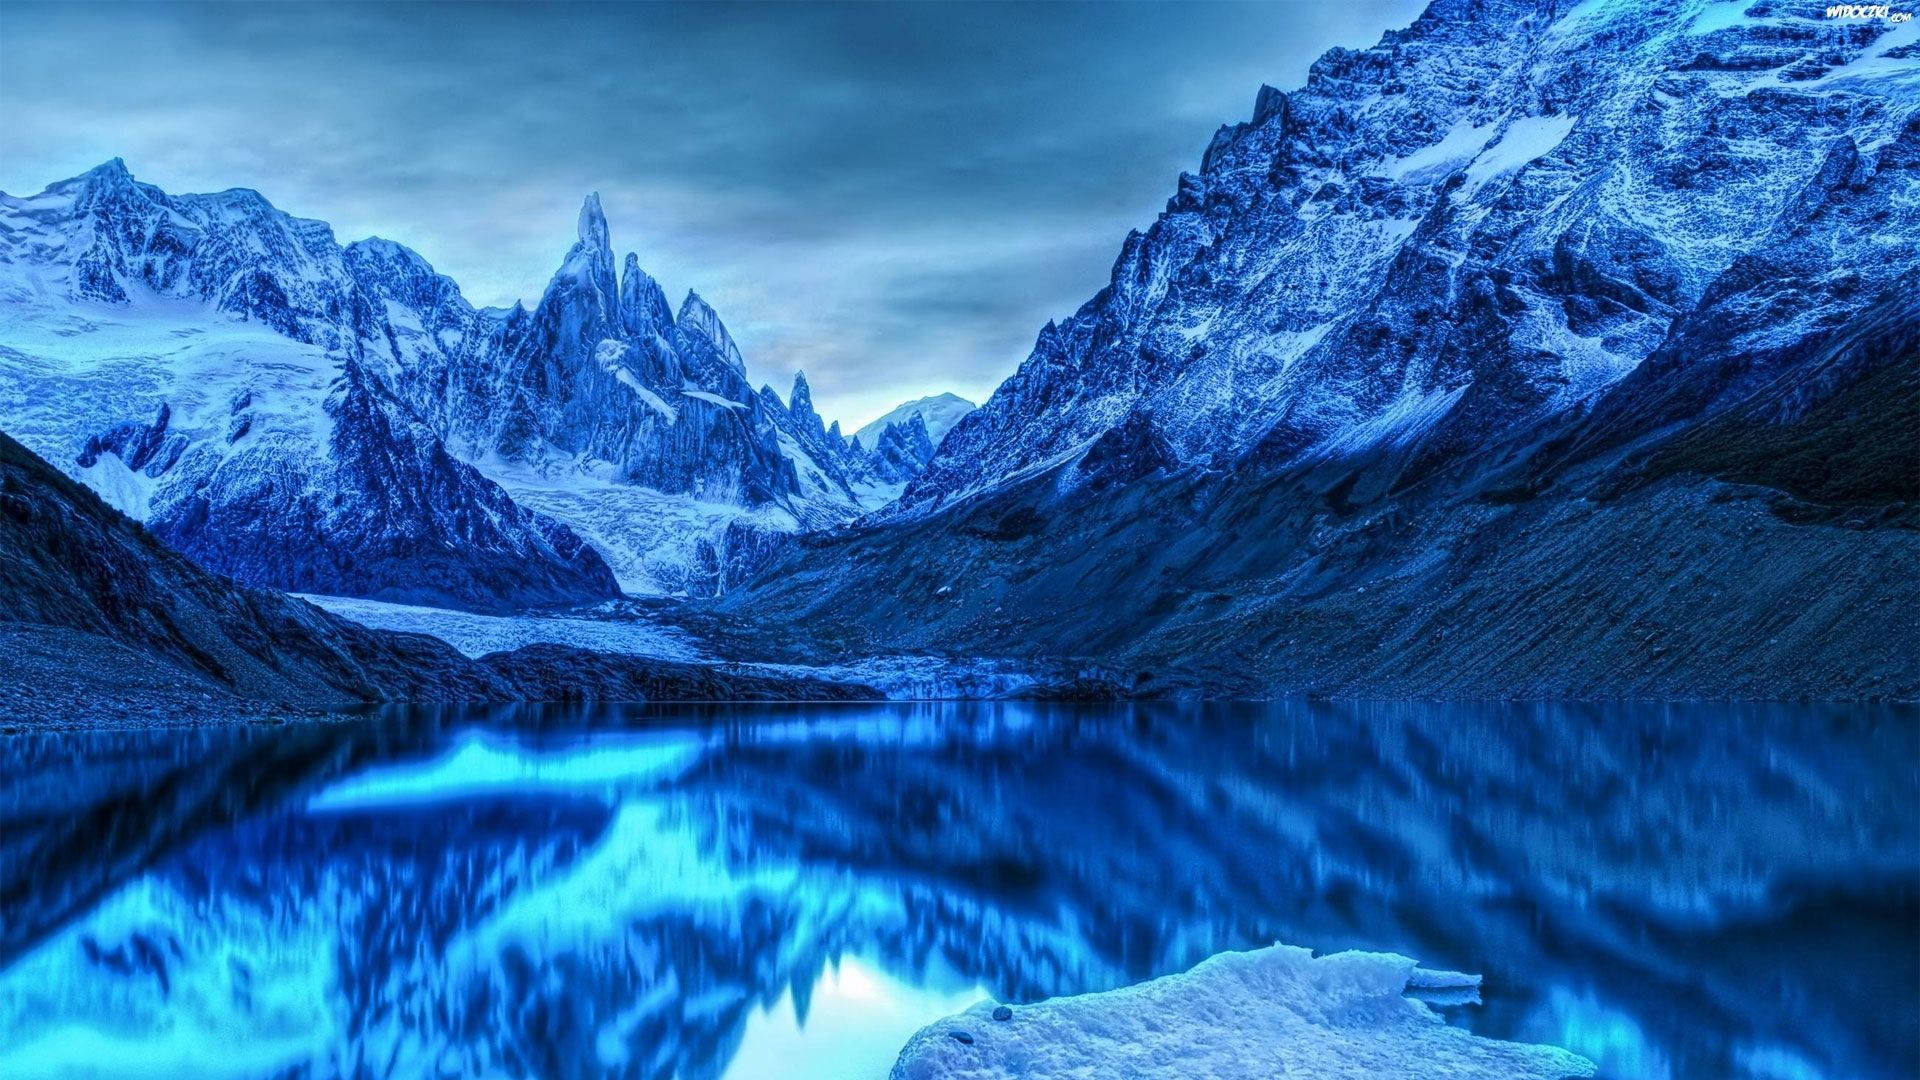 Patagonia Monochromatic Blue Mountain Range